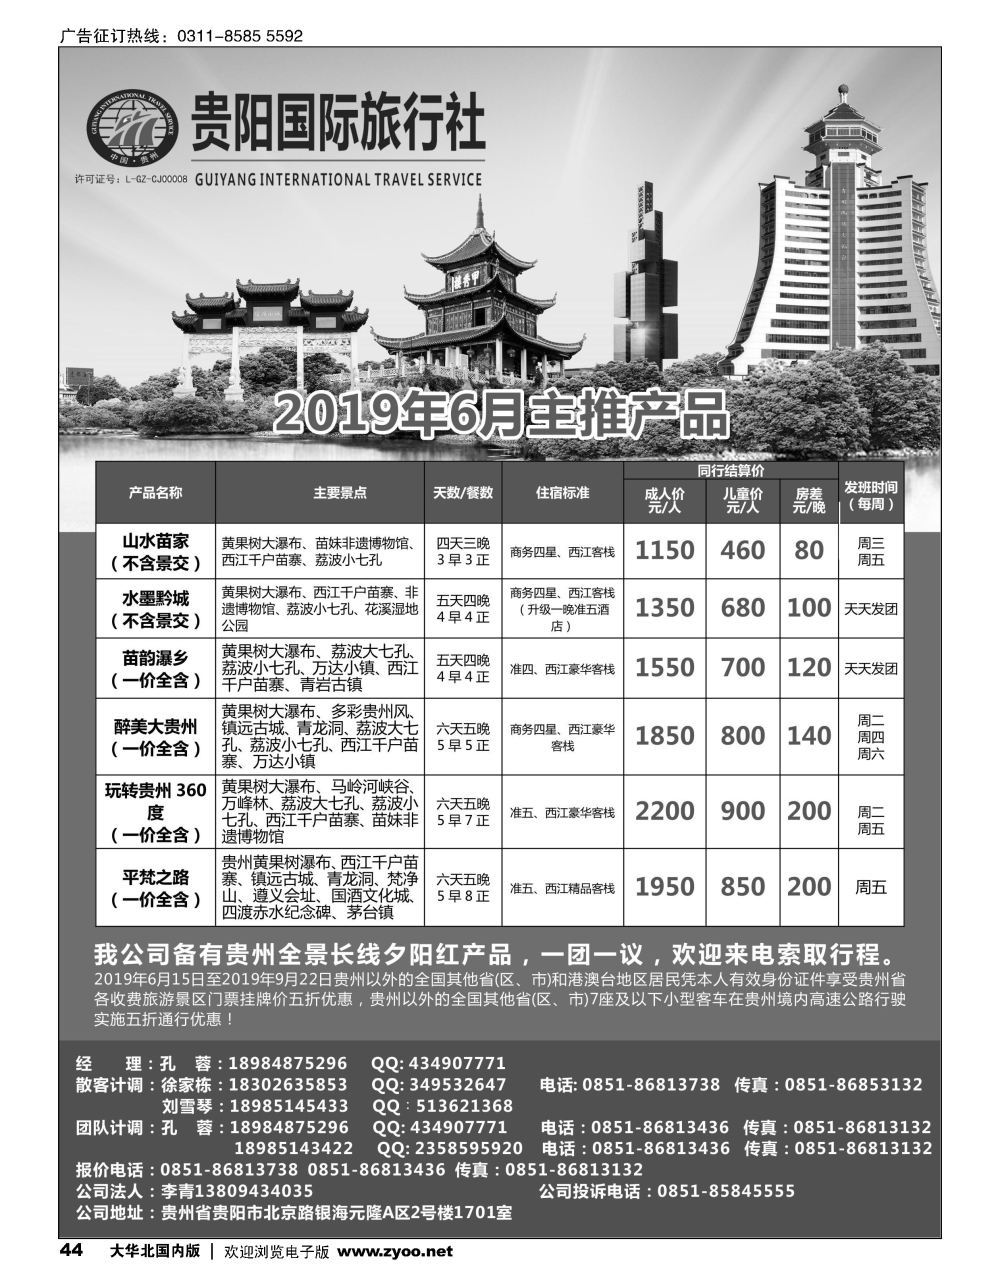 44贵阳国际旅行社-贵州全线夕阳红产品